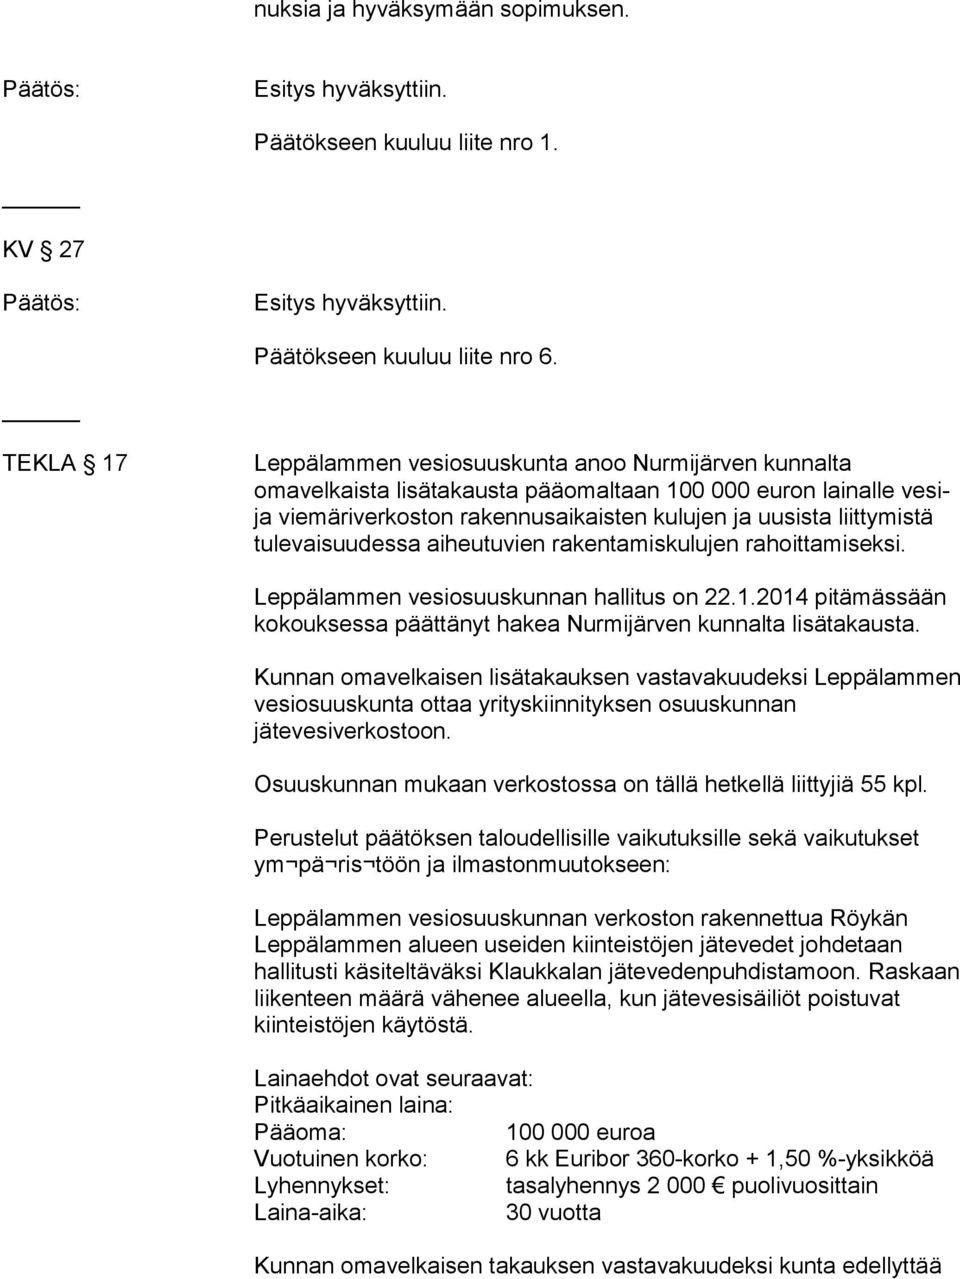 tulevaisuudessa aiheutuvien rakentamiskulujen rahoittamiseksi. Leppälammen vesiosuuskunnan hallitus on 22.1.2014 pitämässään kokouksessa päättänyt hakea Nurmijärven kunnalta lisätakausta.